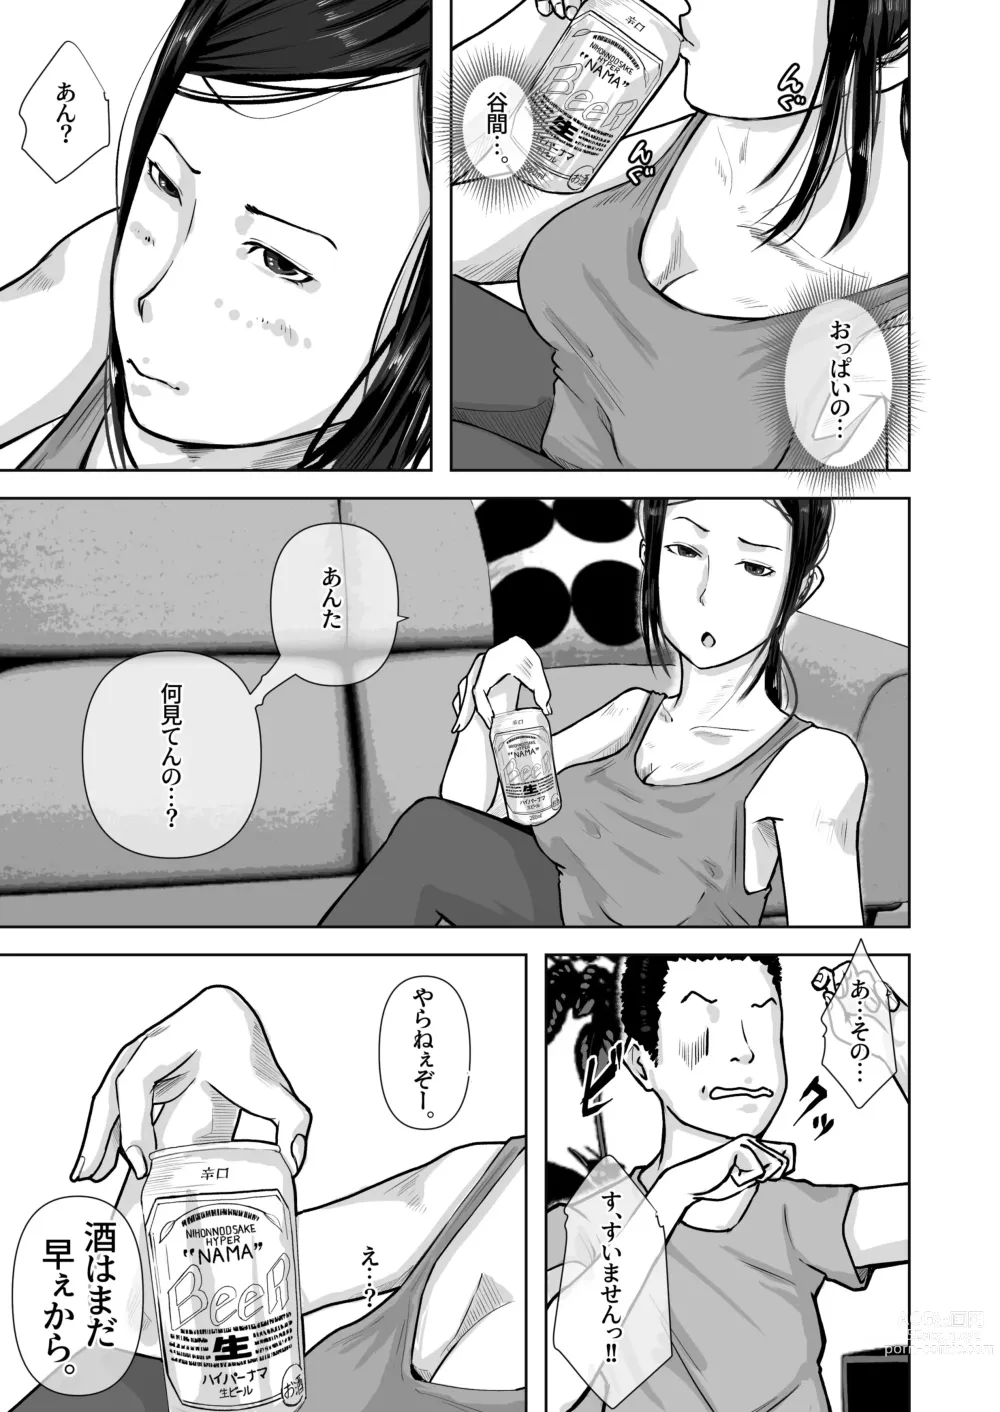 Page 6 of doujinshi Tomodachi no Okaa-san o Okazu ni Suru.